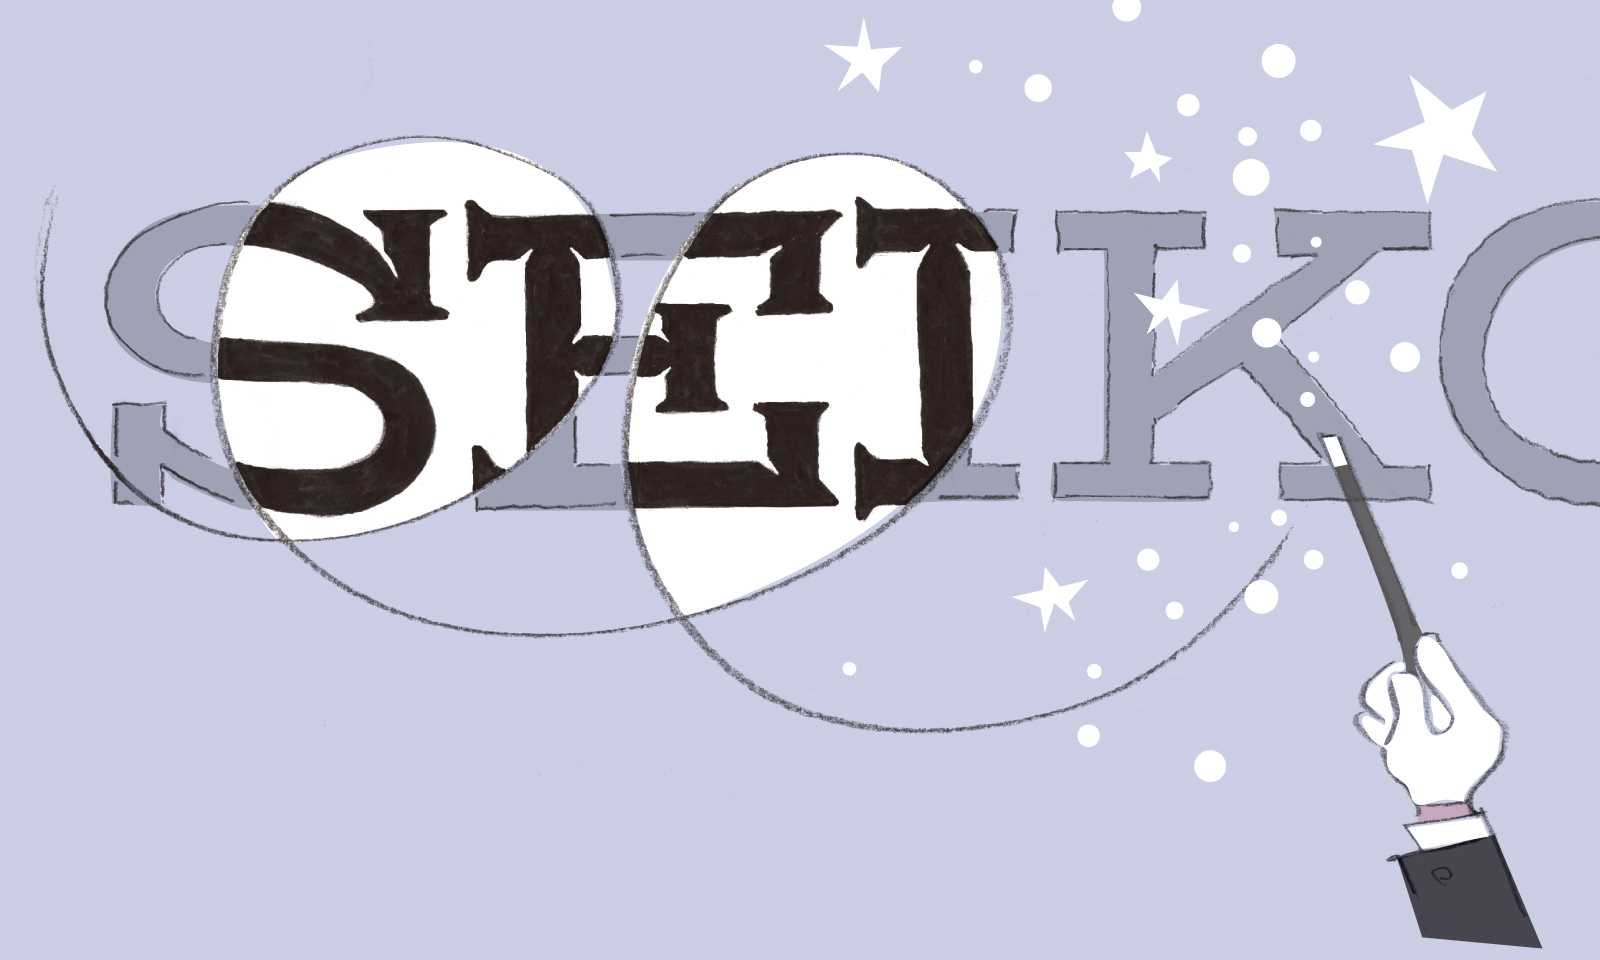 マジシャンがステッキを回してSEIKOのロゴに魔法をかけているところのイラスト